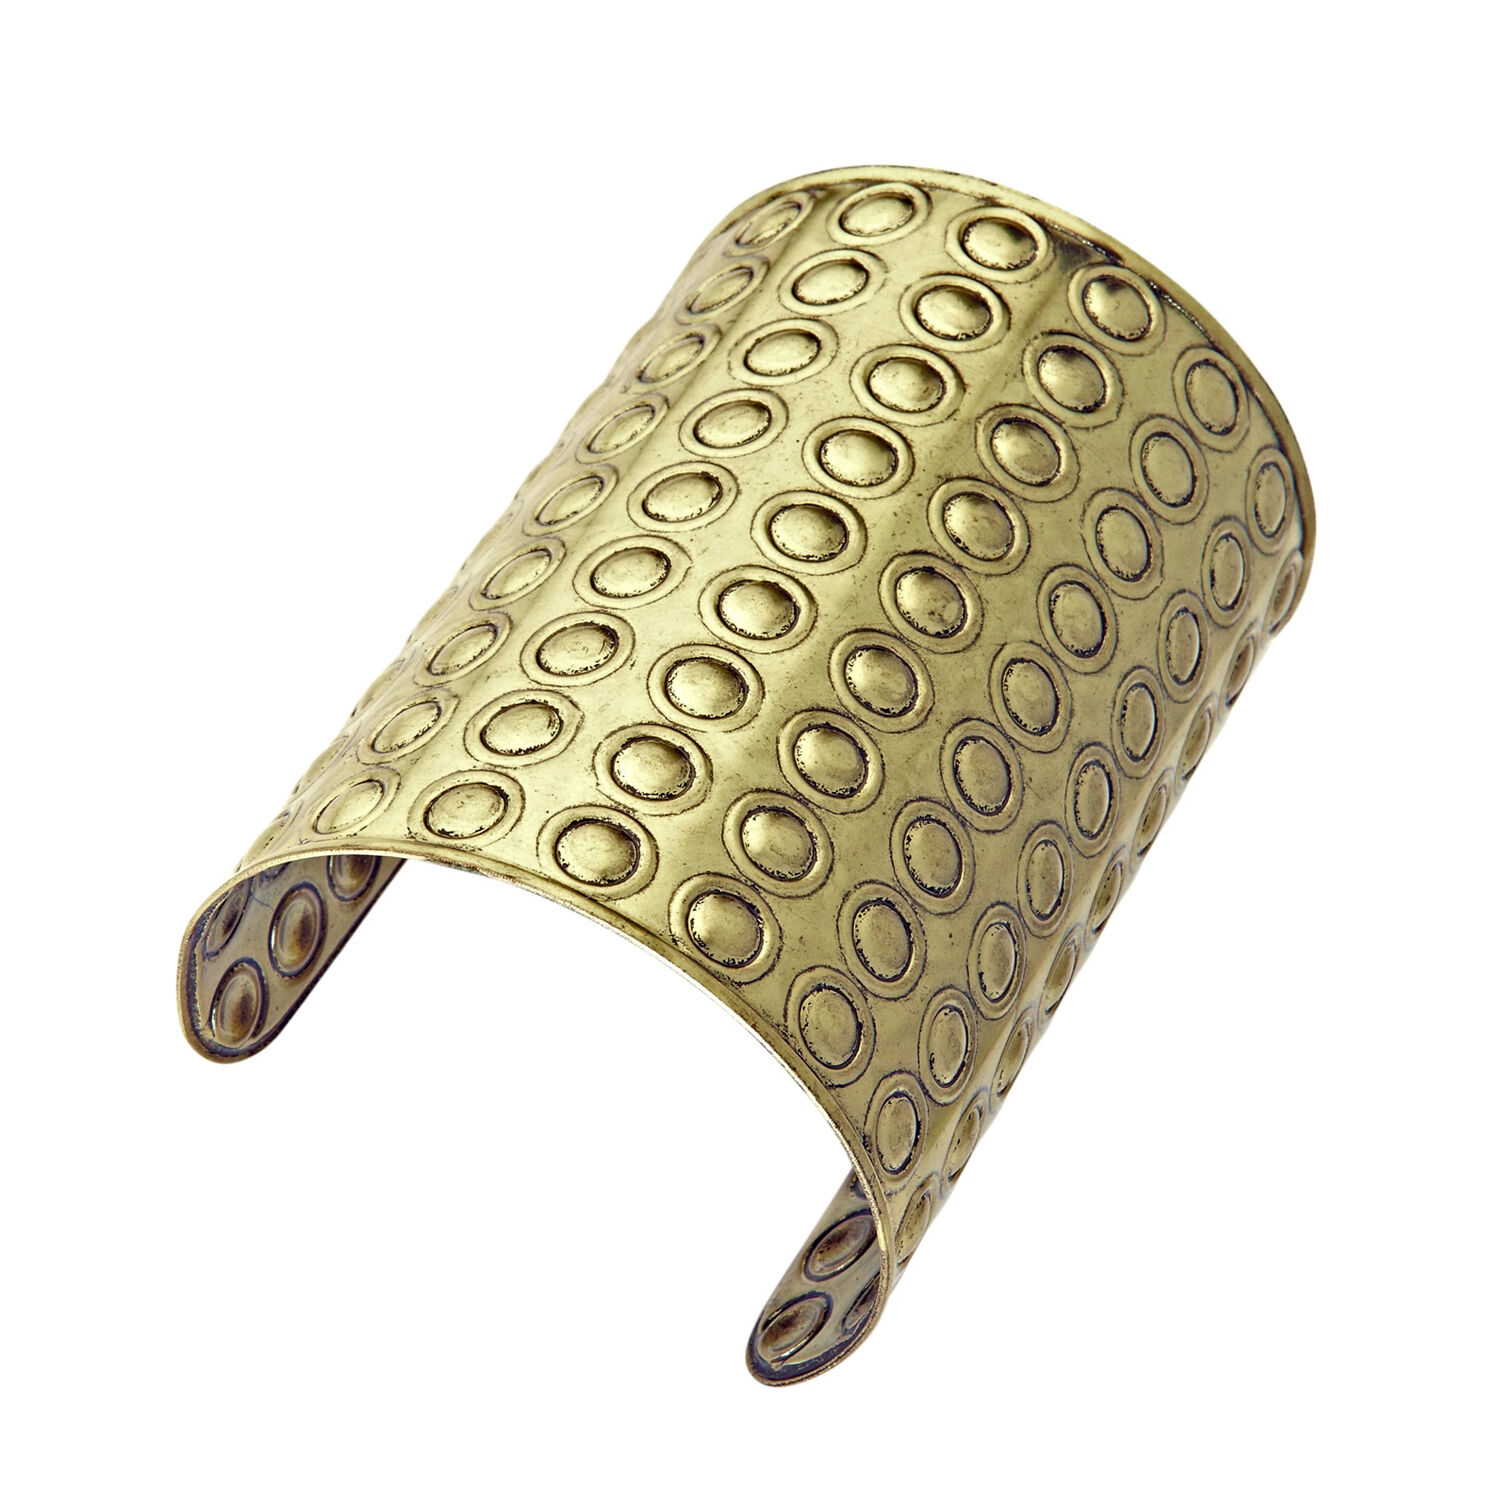 NEU Armband Bronzeoptik für Römer, Orient, Historische Kostüme, mit runden Nieten